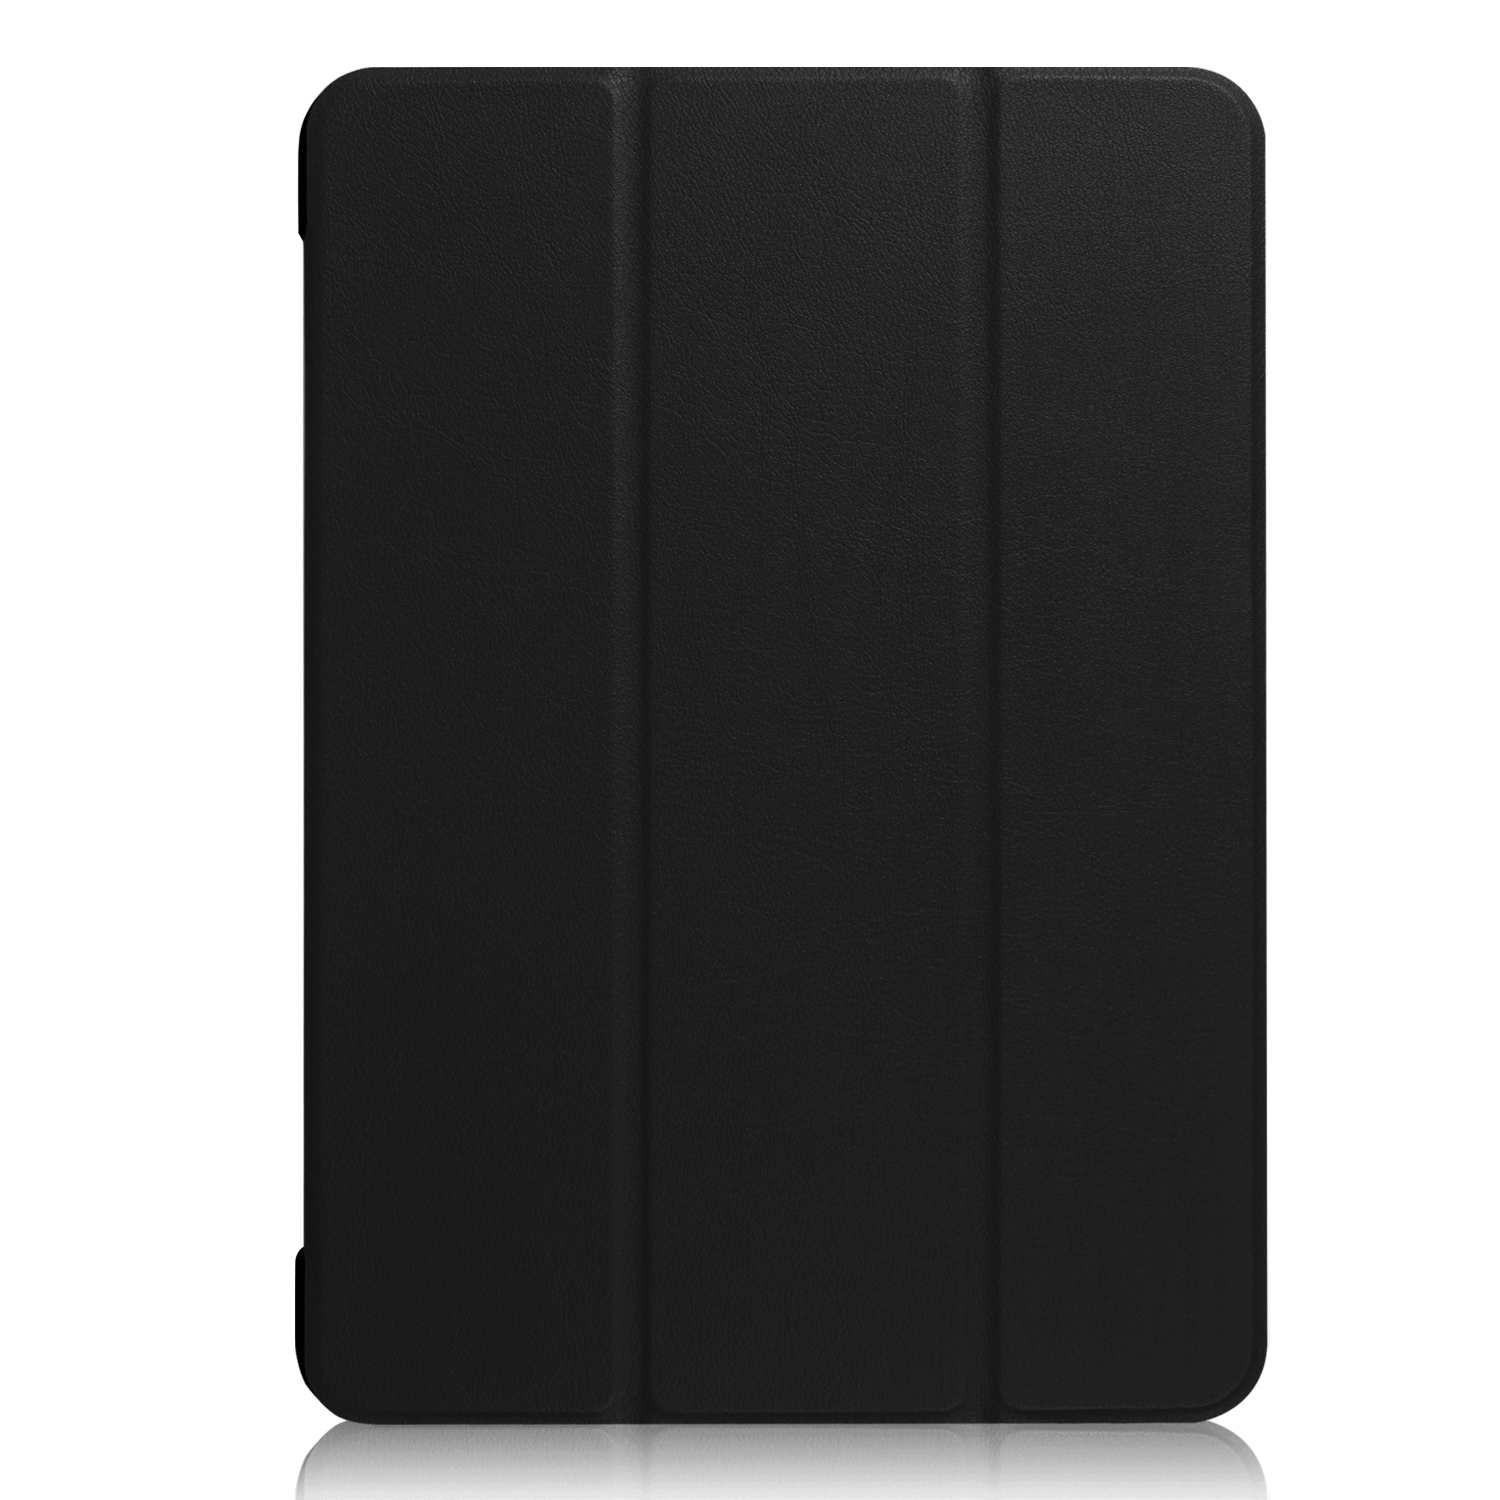 LOBWERK Hülle Schutzhülle iPad 2019 3 Apple Zoll 2017 Pro Bookcover 10.5 iPad für Schwarz Kunstleder, Air